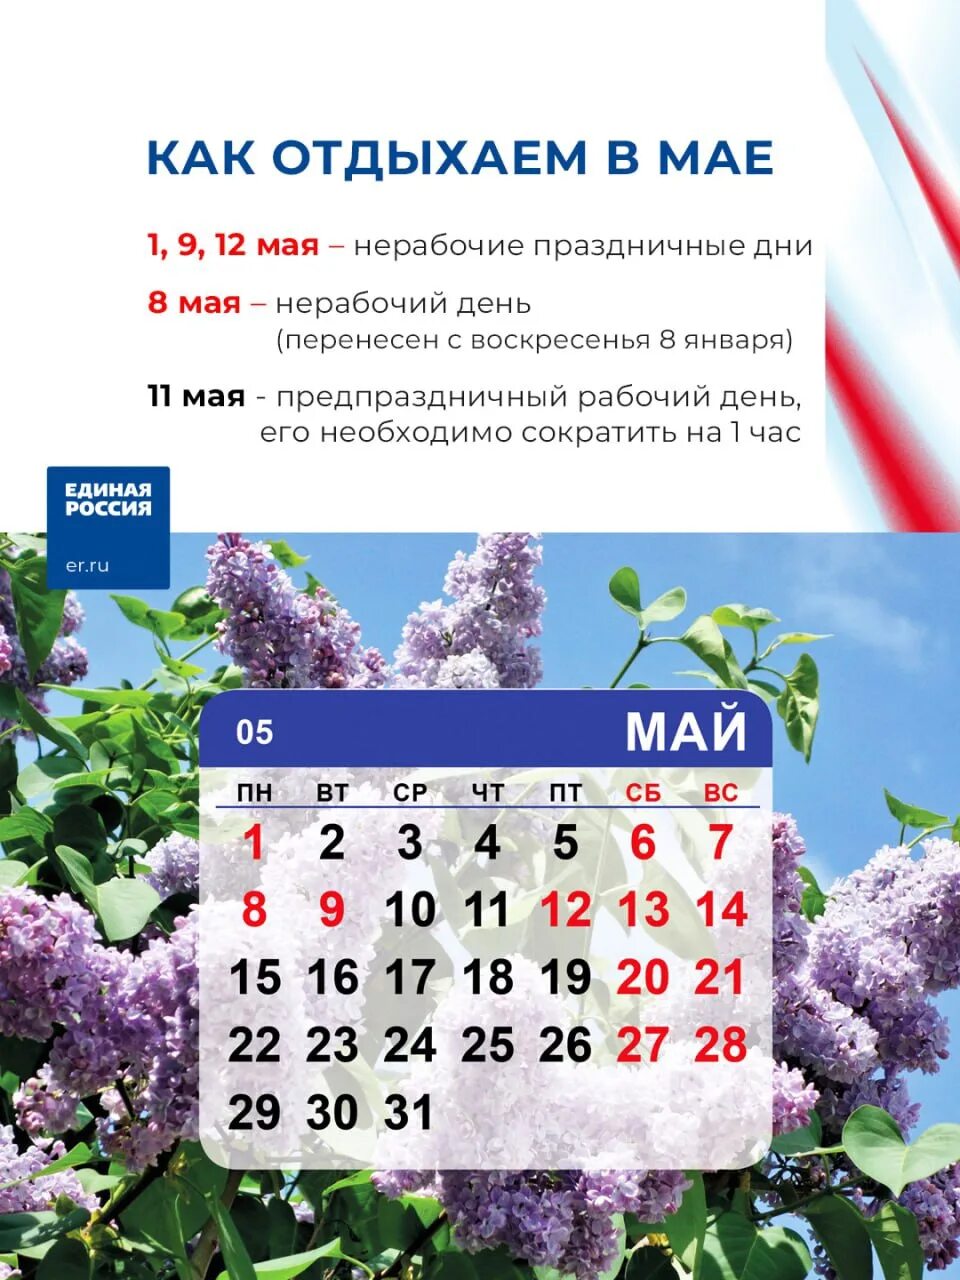 Праздничные майские дни в этом году. Праздники в мае. Выходные на майские праздники. Праздники в мае календарь. Рабочие и праздничные дни майские.